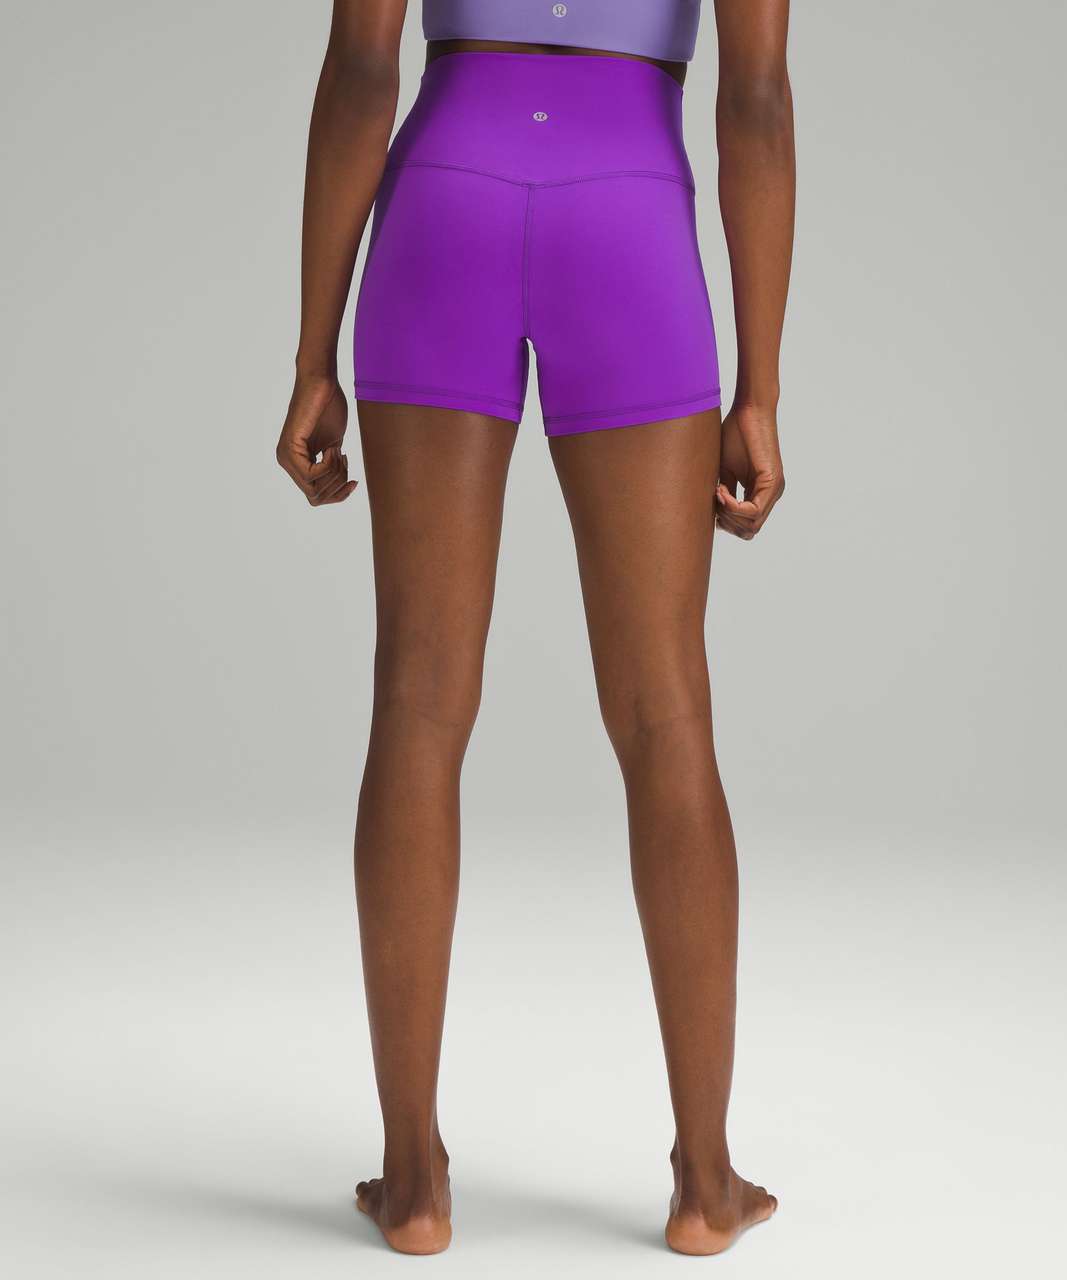 Lululemon Align™ High-Rise Short 4, Women's Shorts